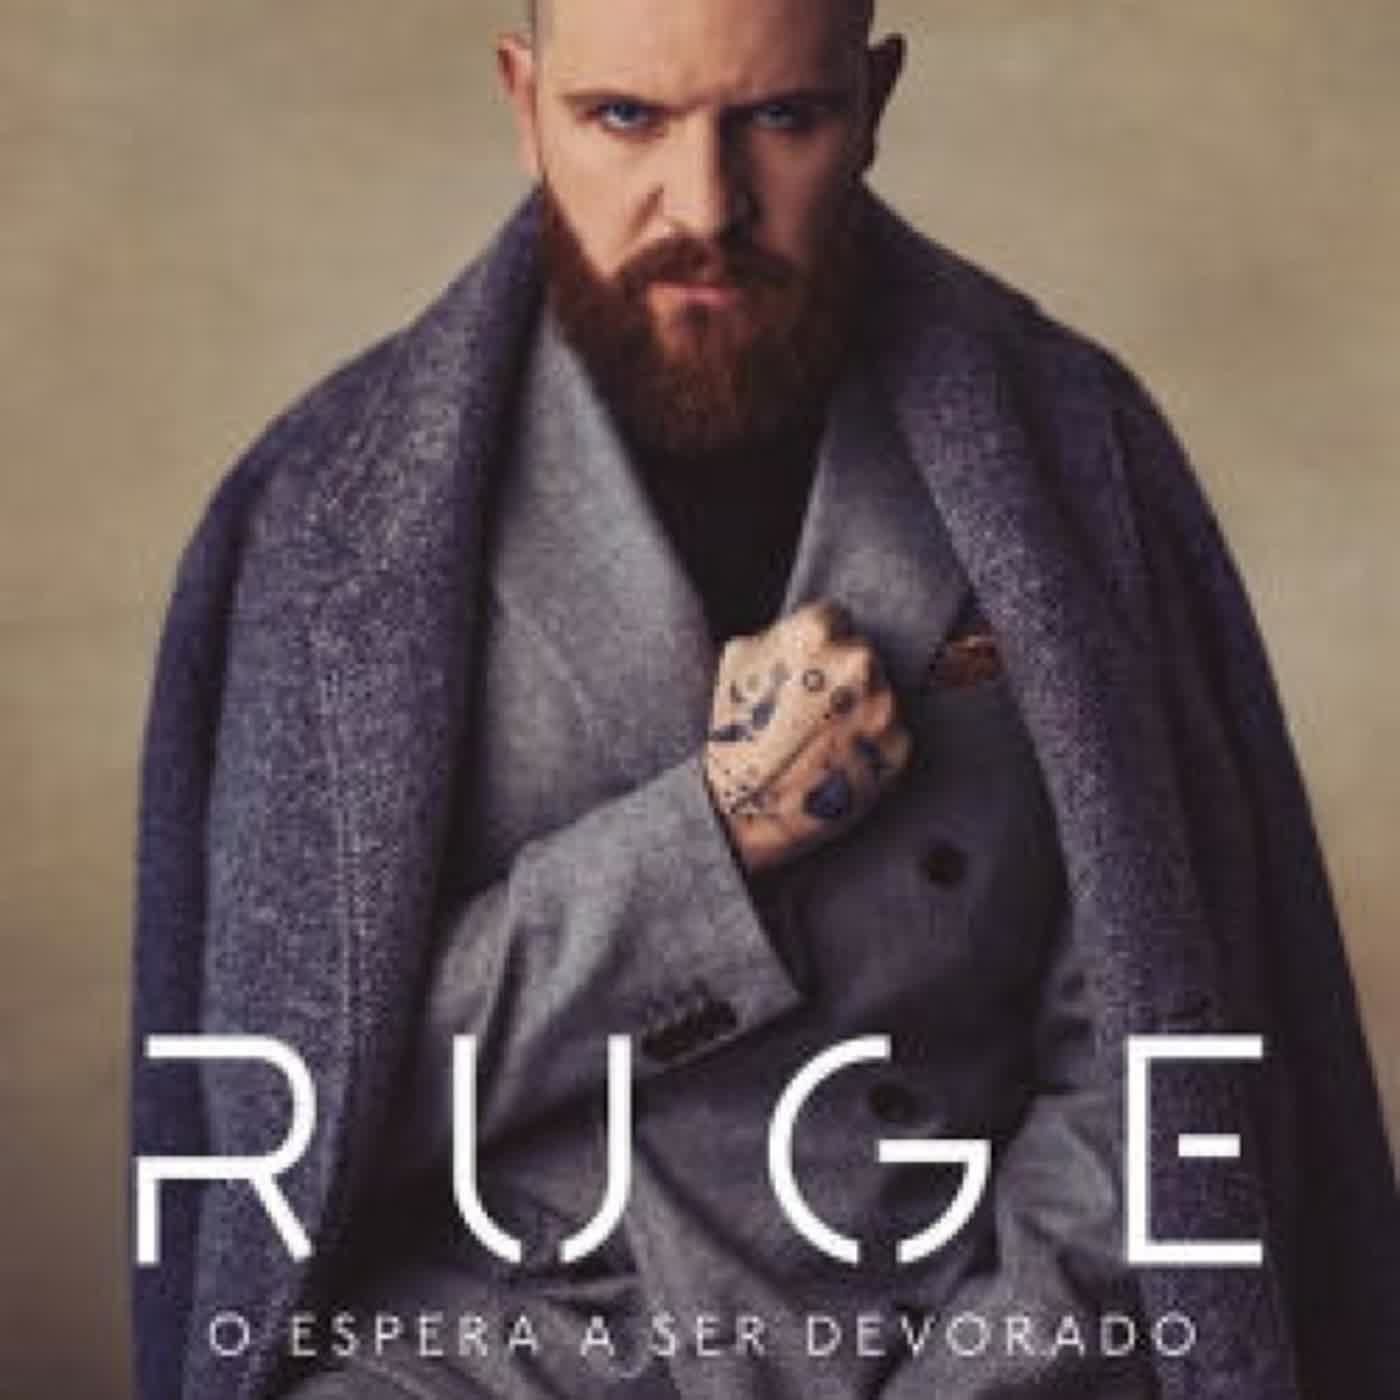 RUGE: O espera a ser devorado (Spanish Edition) by Daniel Habif on Iphone New Format